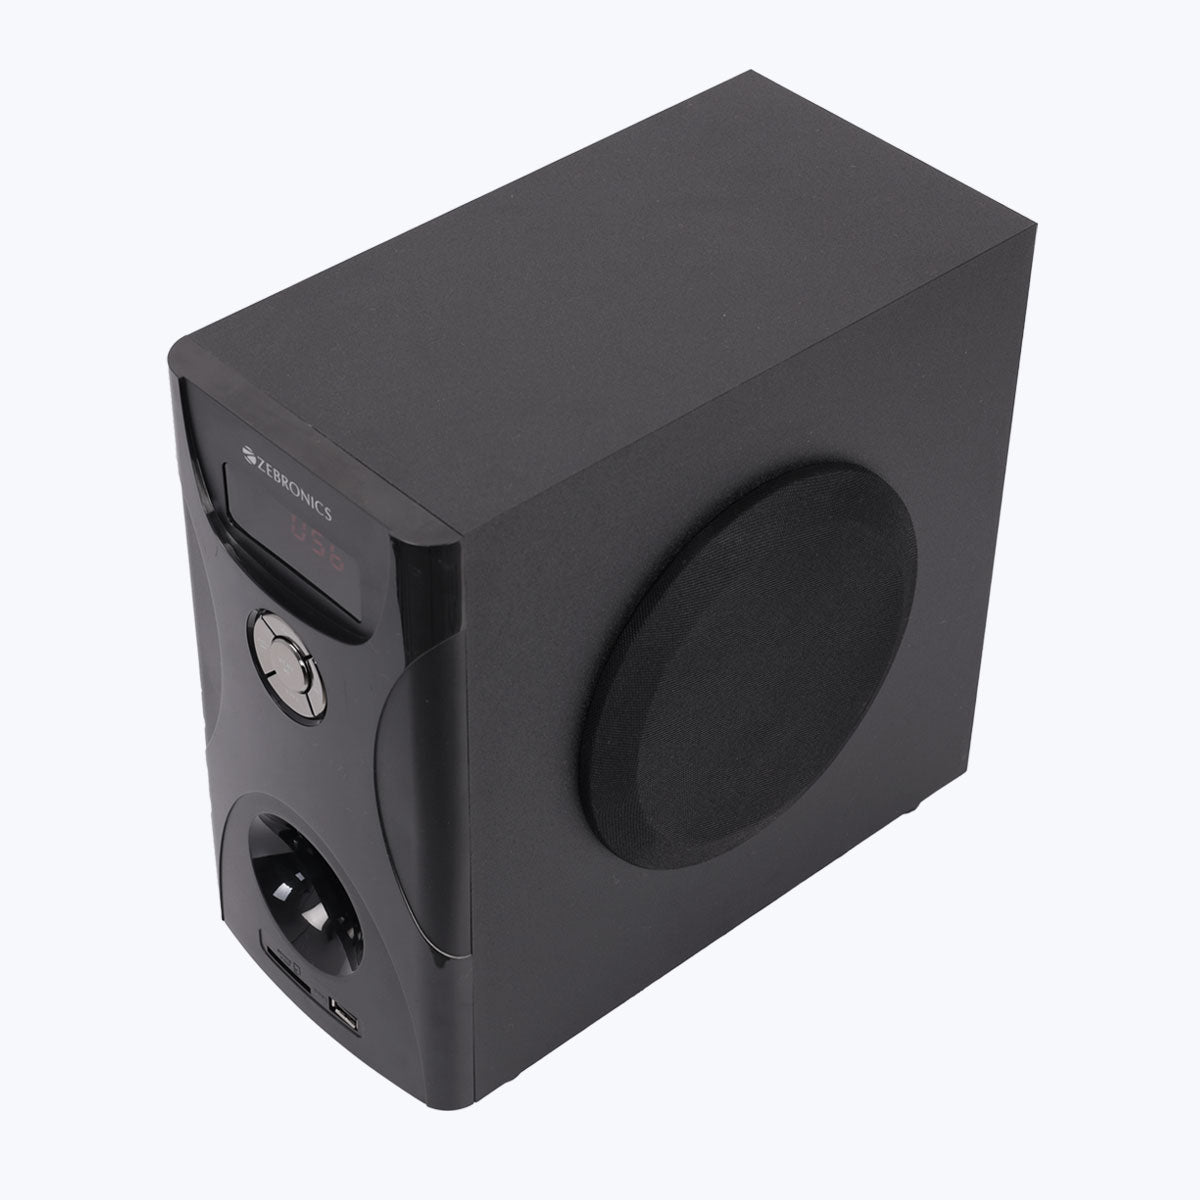 ZEB-BT6592RUCF - 5.1 Speaker - Zebronics